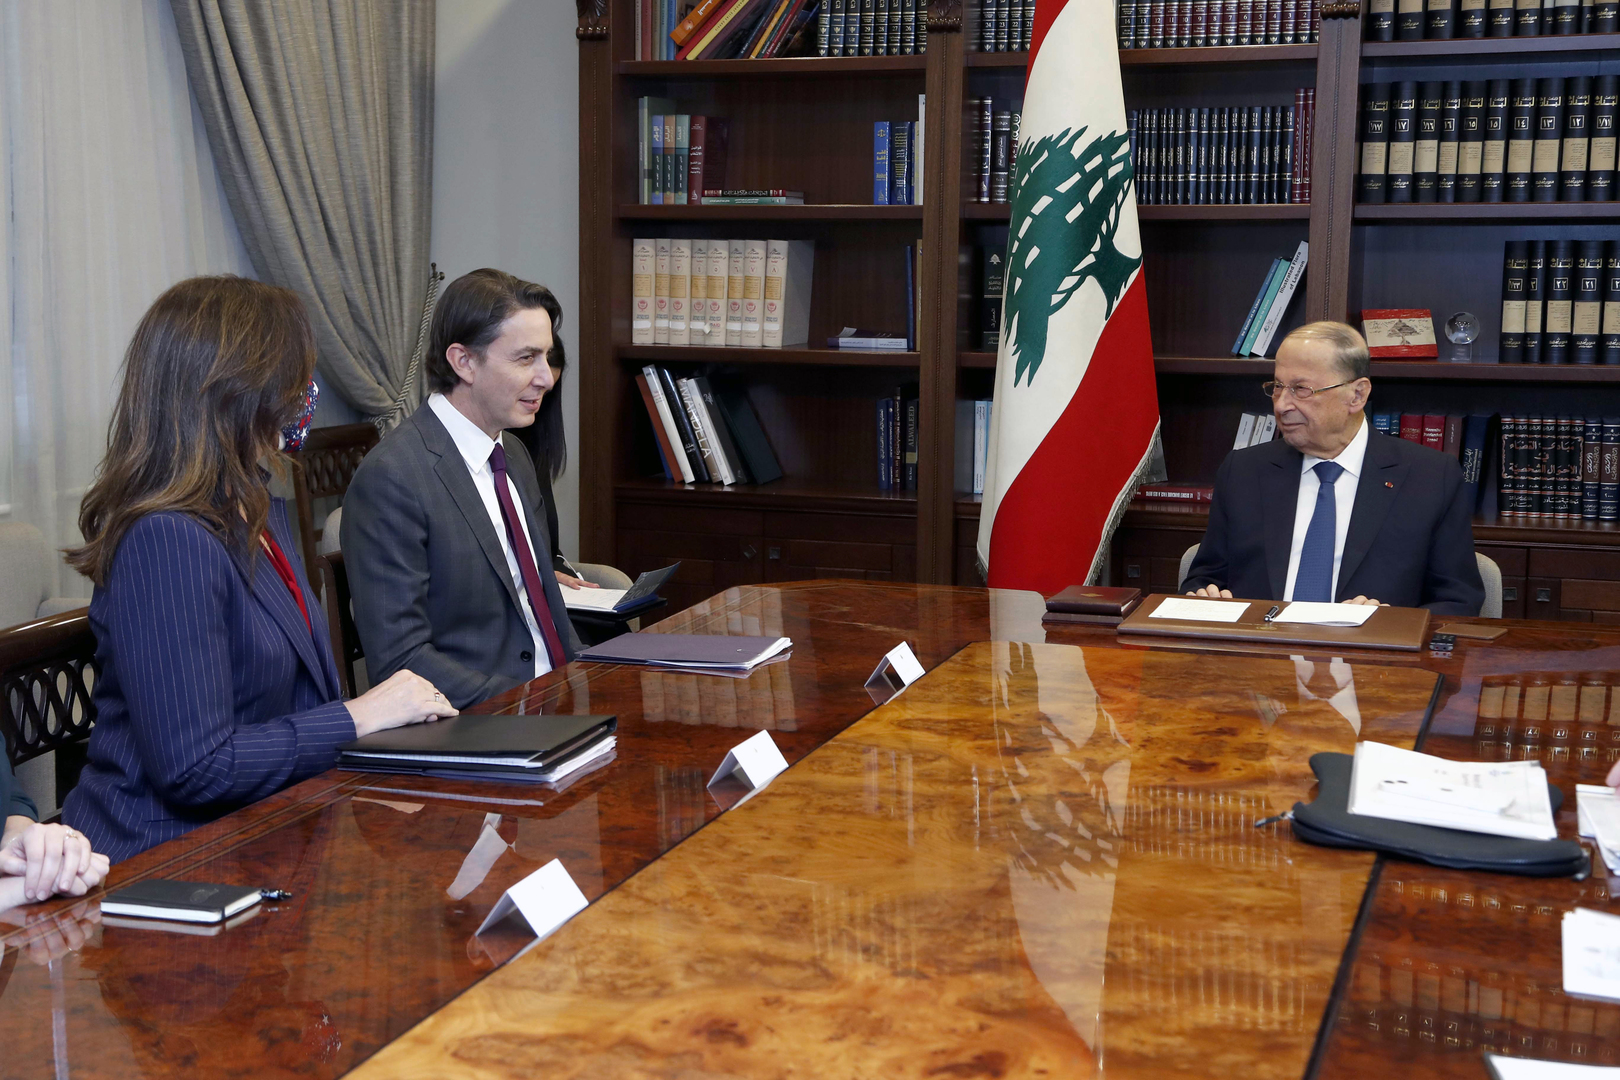 الرئيس اللبناني يحمل الوسيط الأمريكي اقتراحا إلى إسرائيل بشأن نزاع الغاز البحري